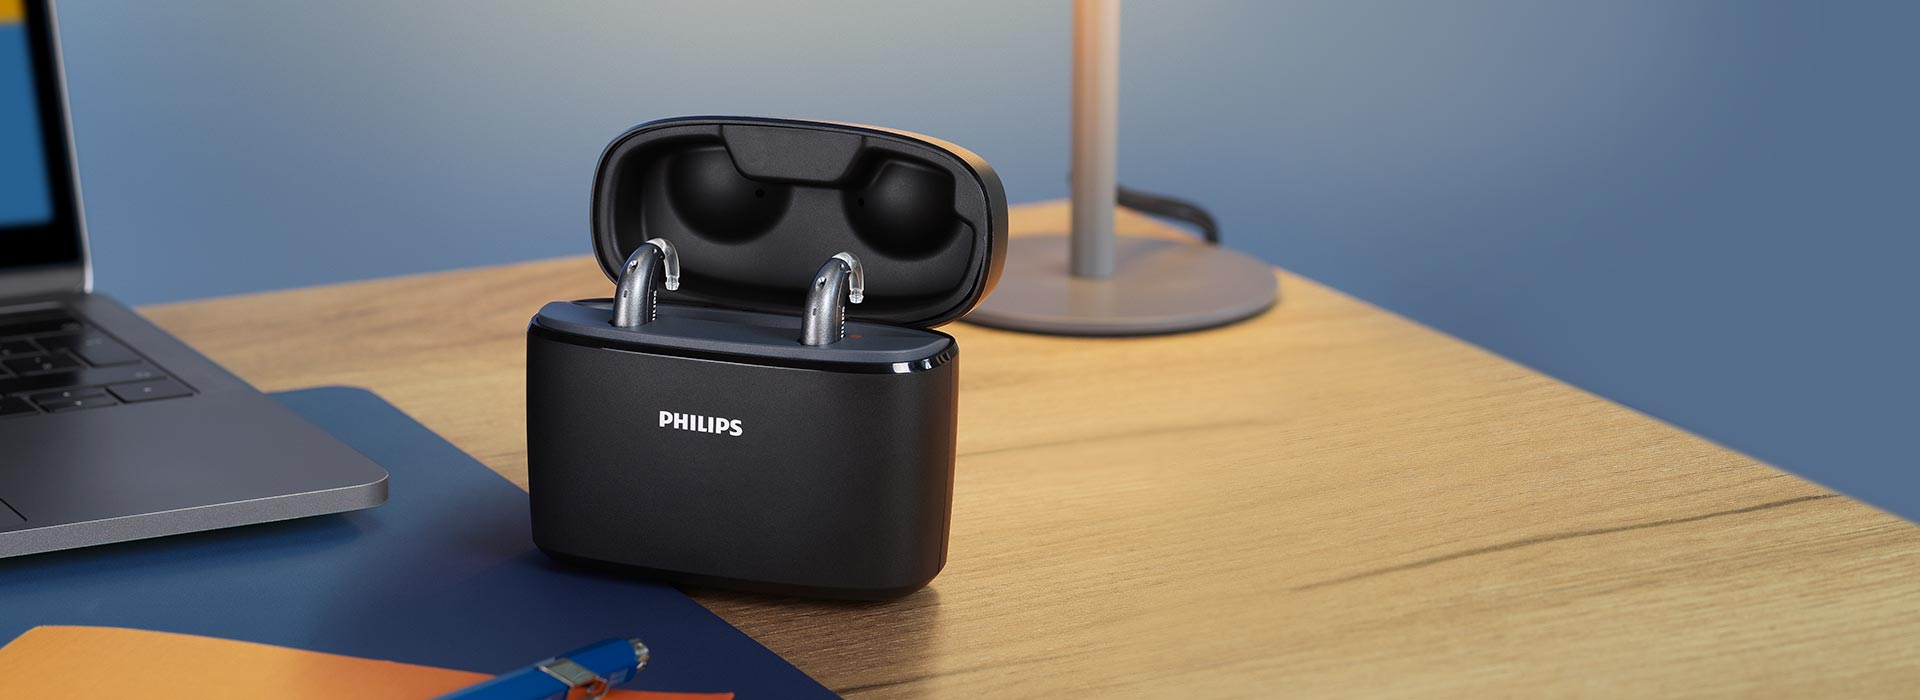 Ładowalne aparaty słuchowe Philips HearLink w przenośnej ładowarce Charger Plus, która leży na biurku obok laptopa, lampki, zeszytu i długopisu